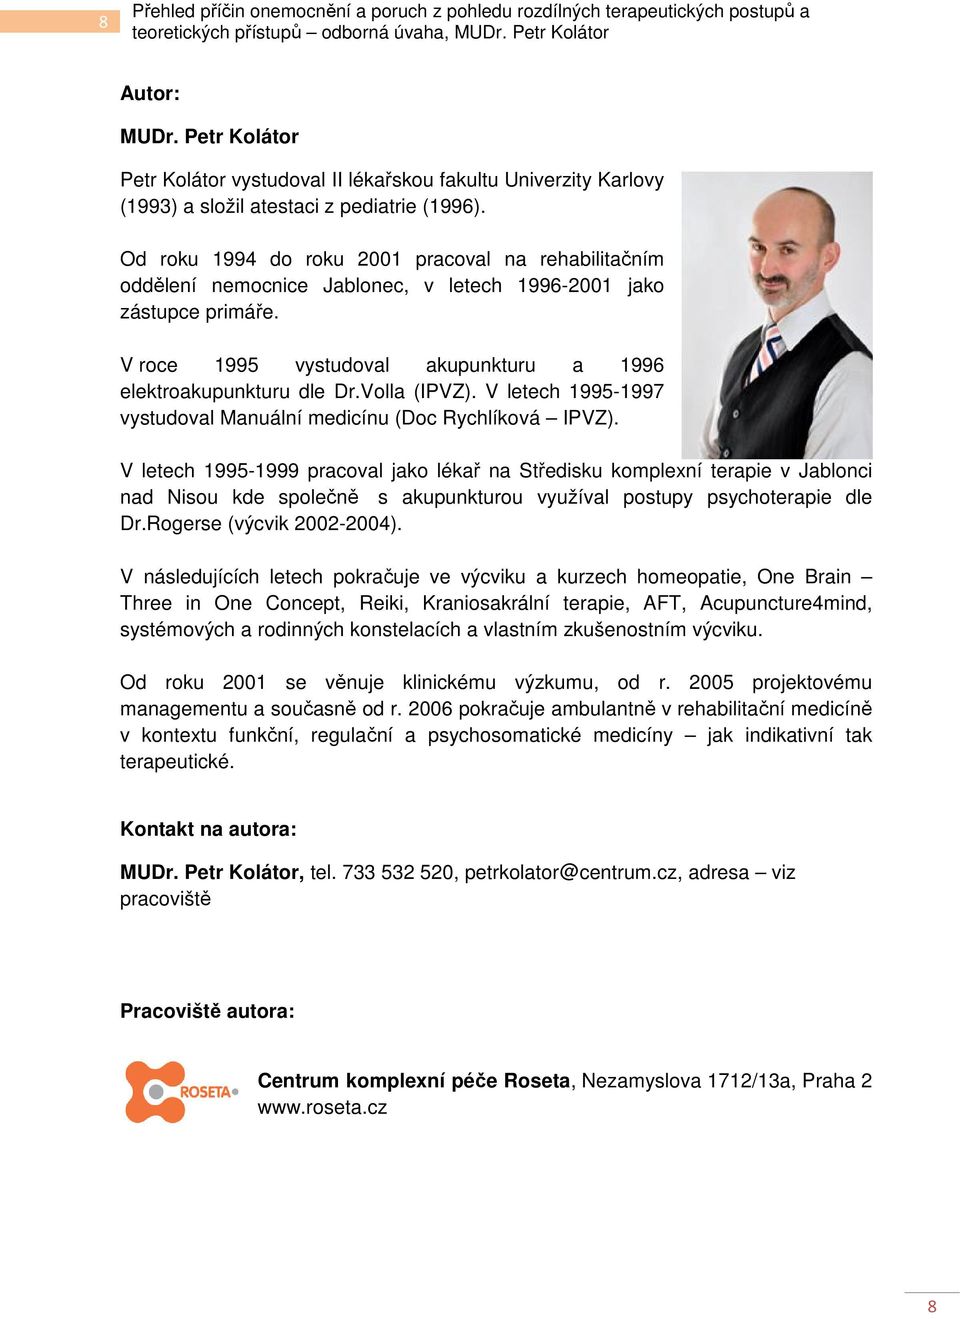 Volla (IPVZ). V letech 1995-1997 vystudoval Manuální medicínu (Doc Rychlíková IPVZ).